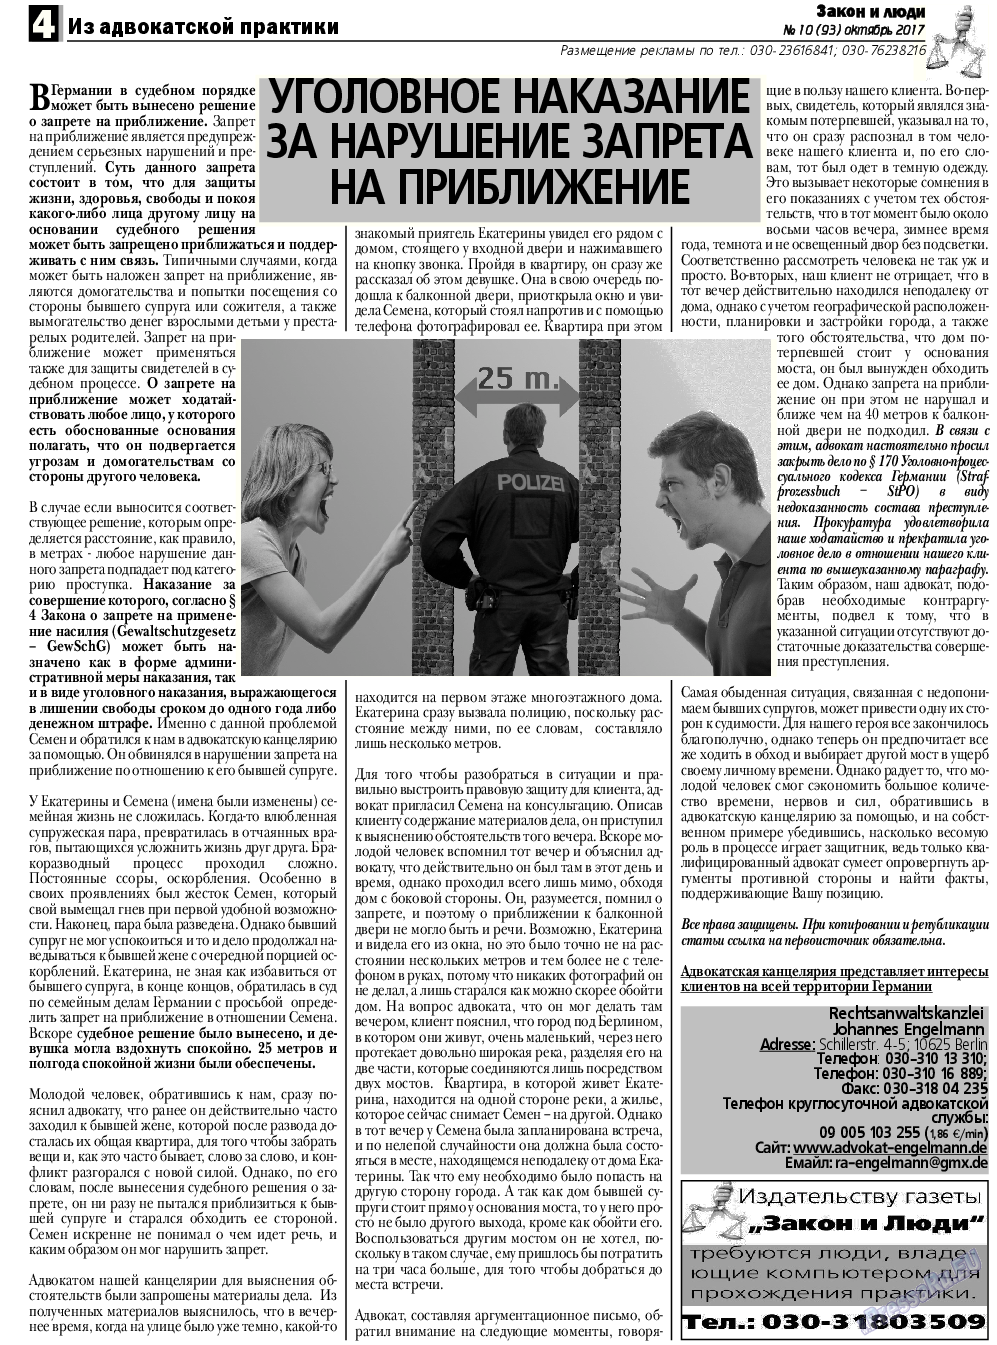 Закон и люди, газета. 2017 №10 стр.4